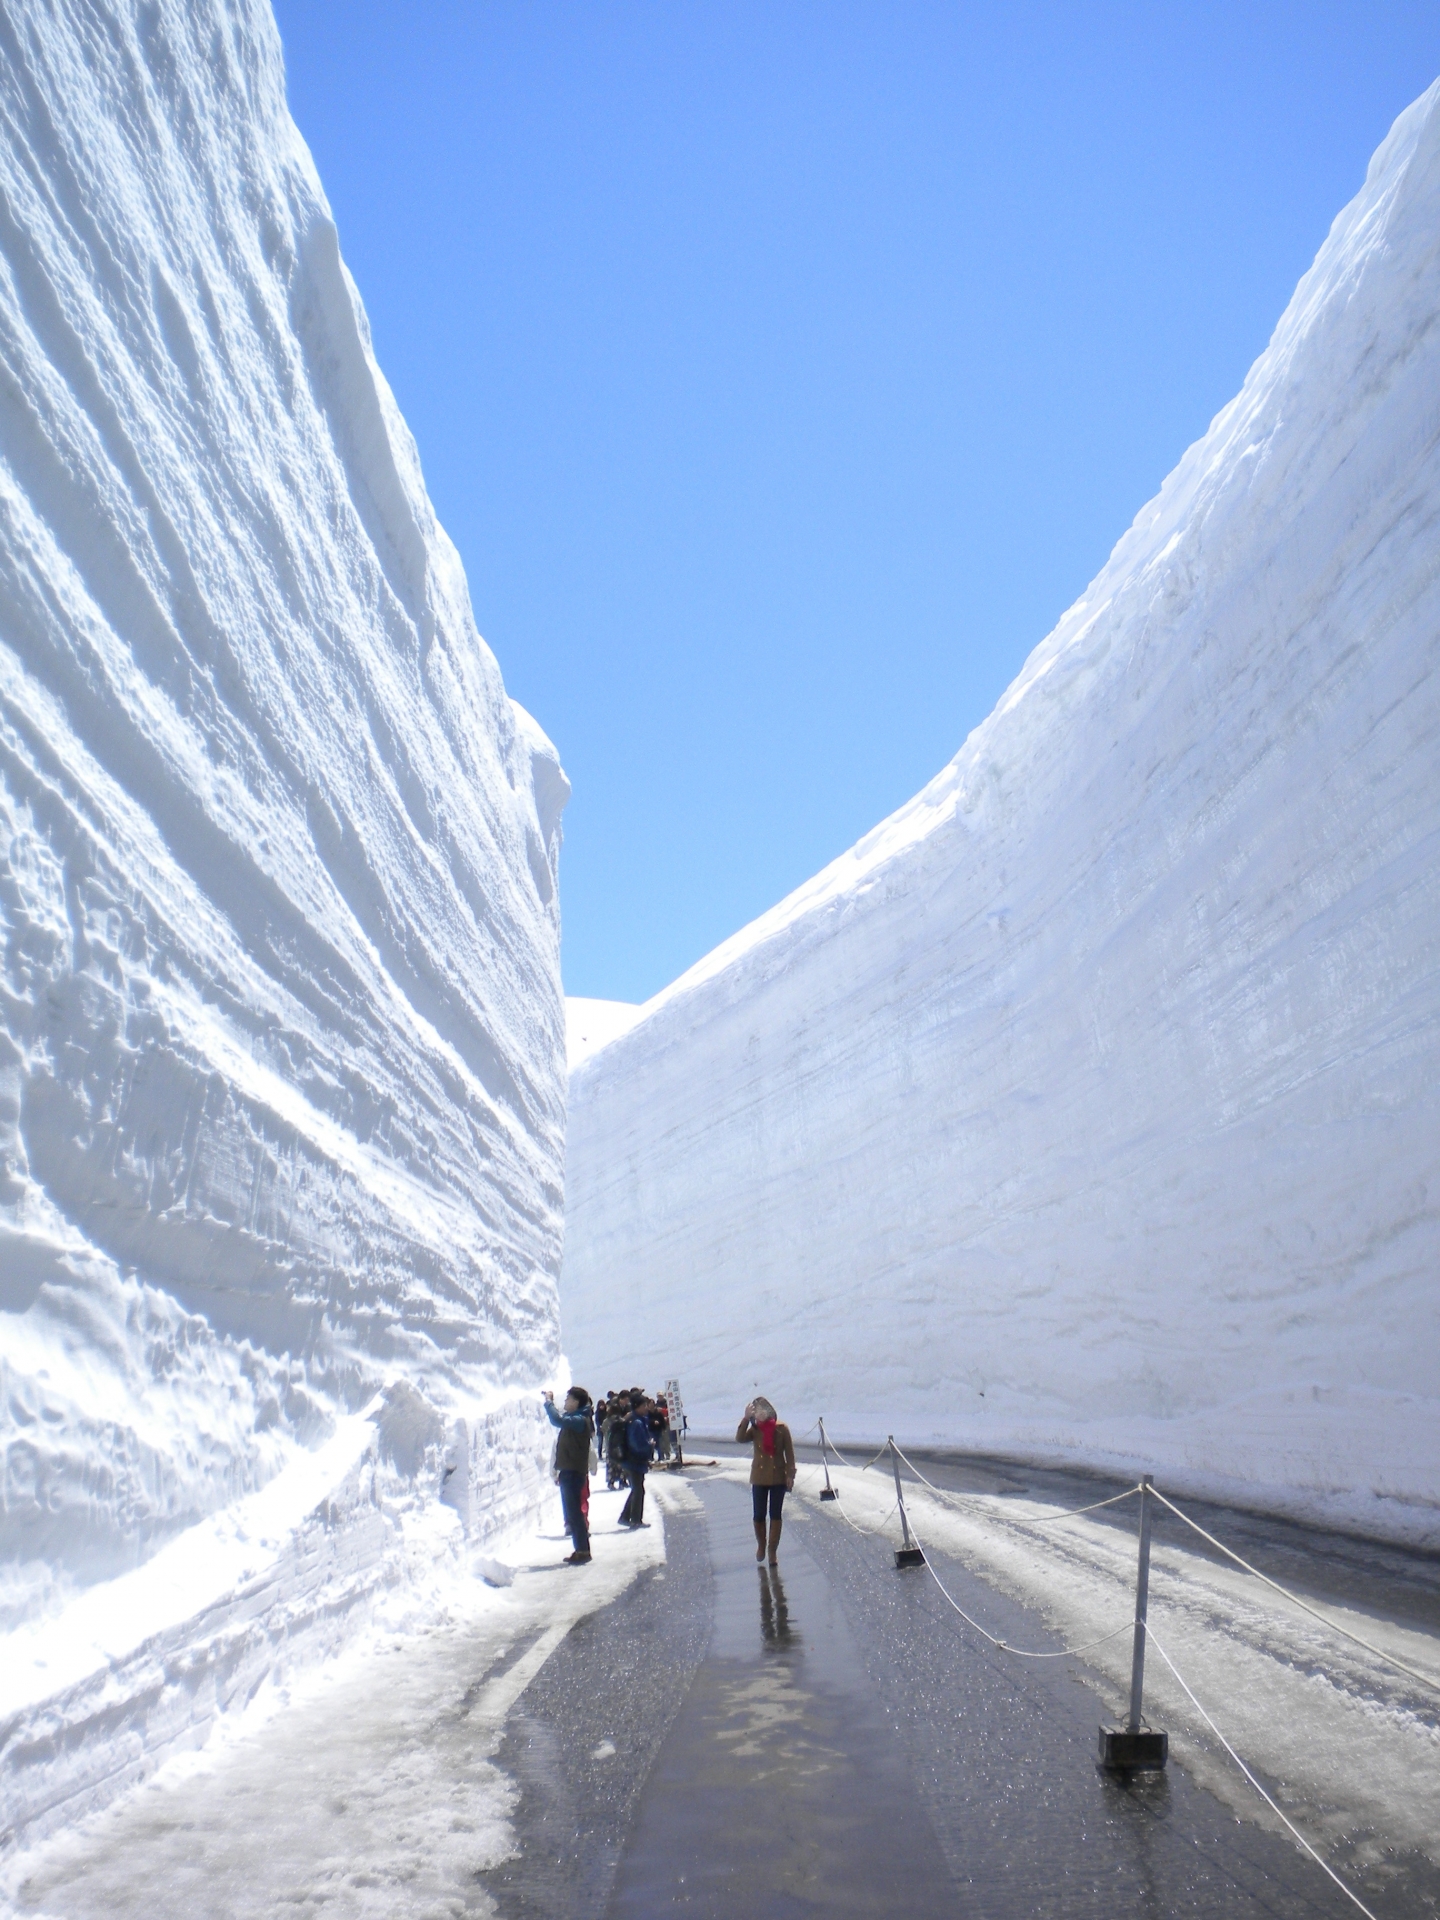 Снігові стіни Татеяма-Куробе. Фото з сайту www.japan-guide.com